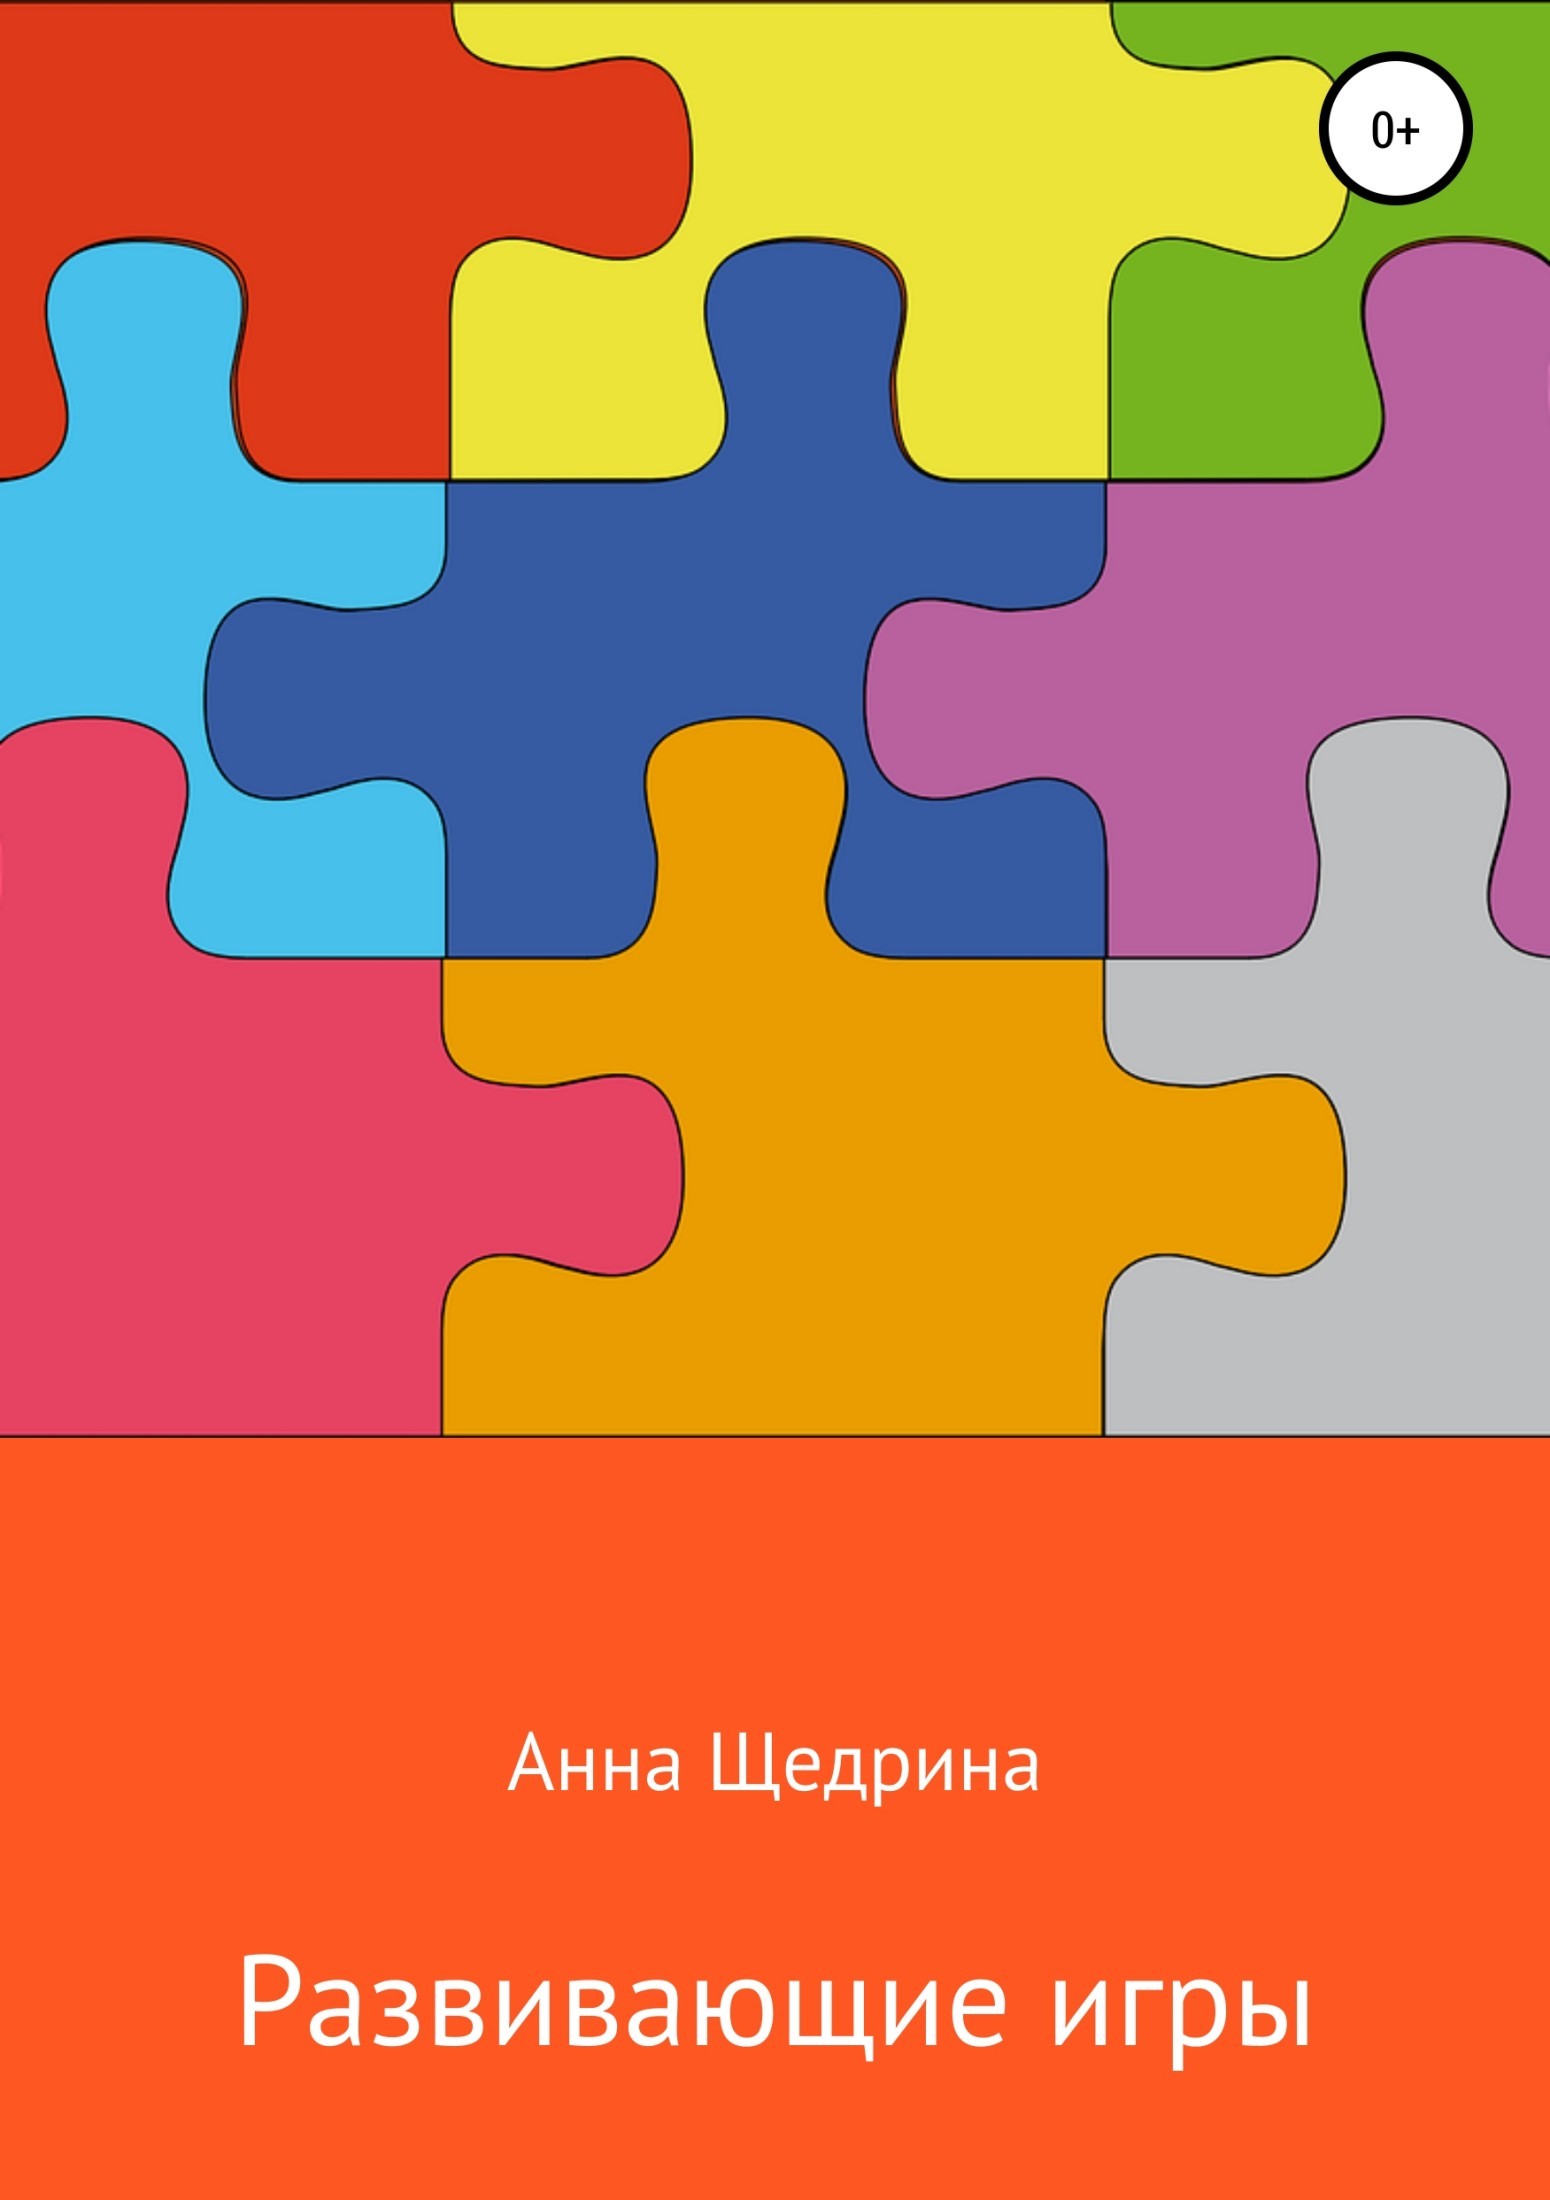 Книга Развивающие игры из серии , созданная Анна Щедрина, может относится к жанру Педагогика. Стоимость книги Развивающие игры  с идентификатором 28063313 составляет 0 руб.